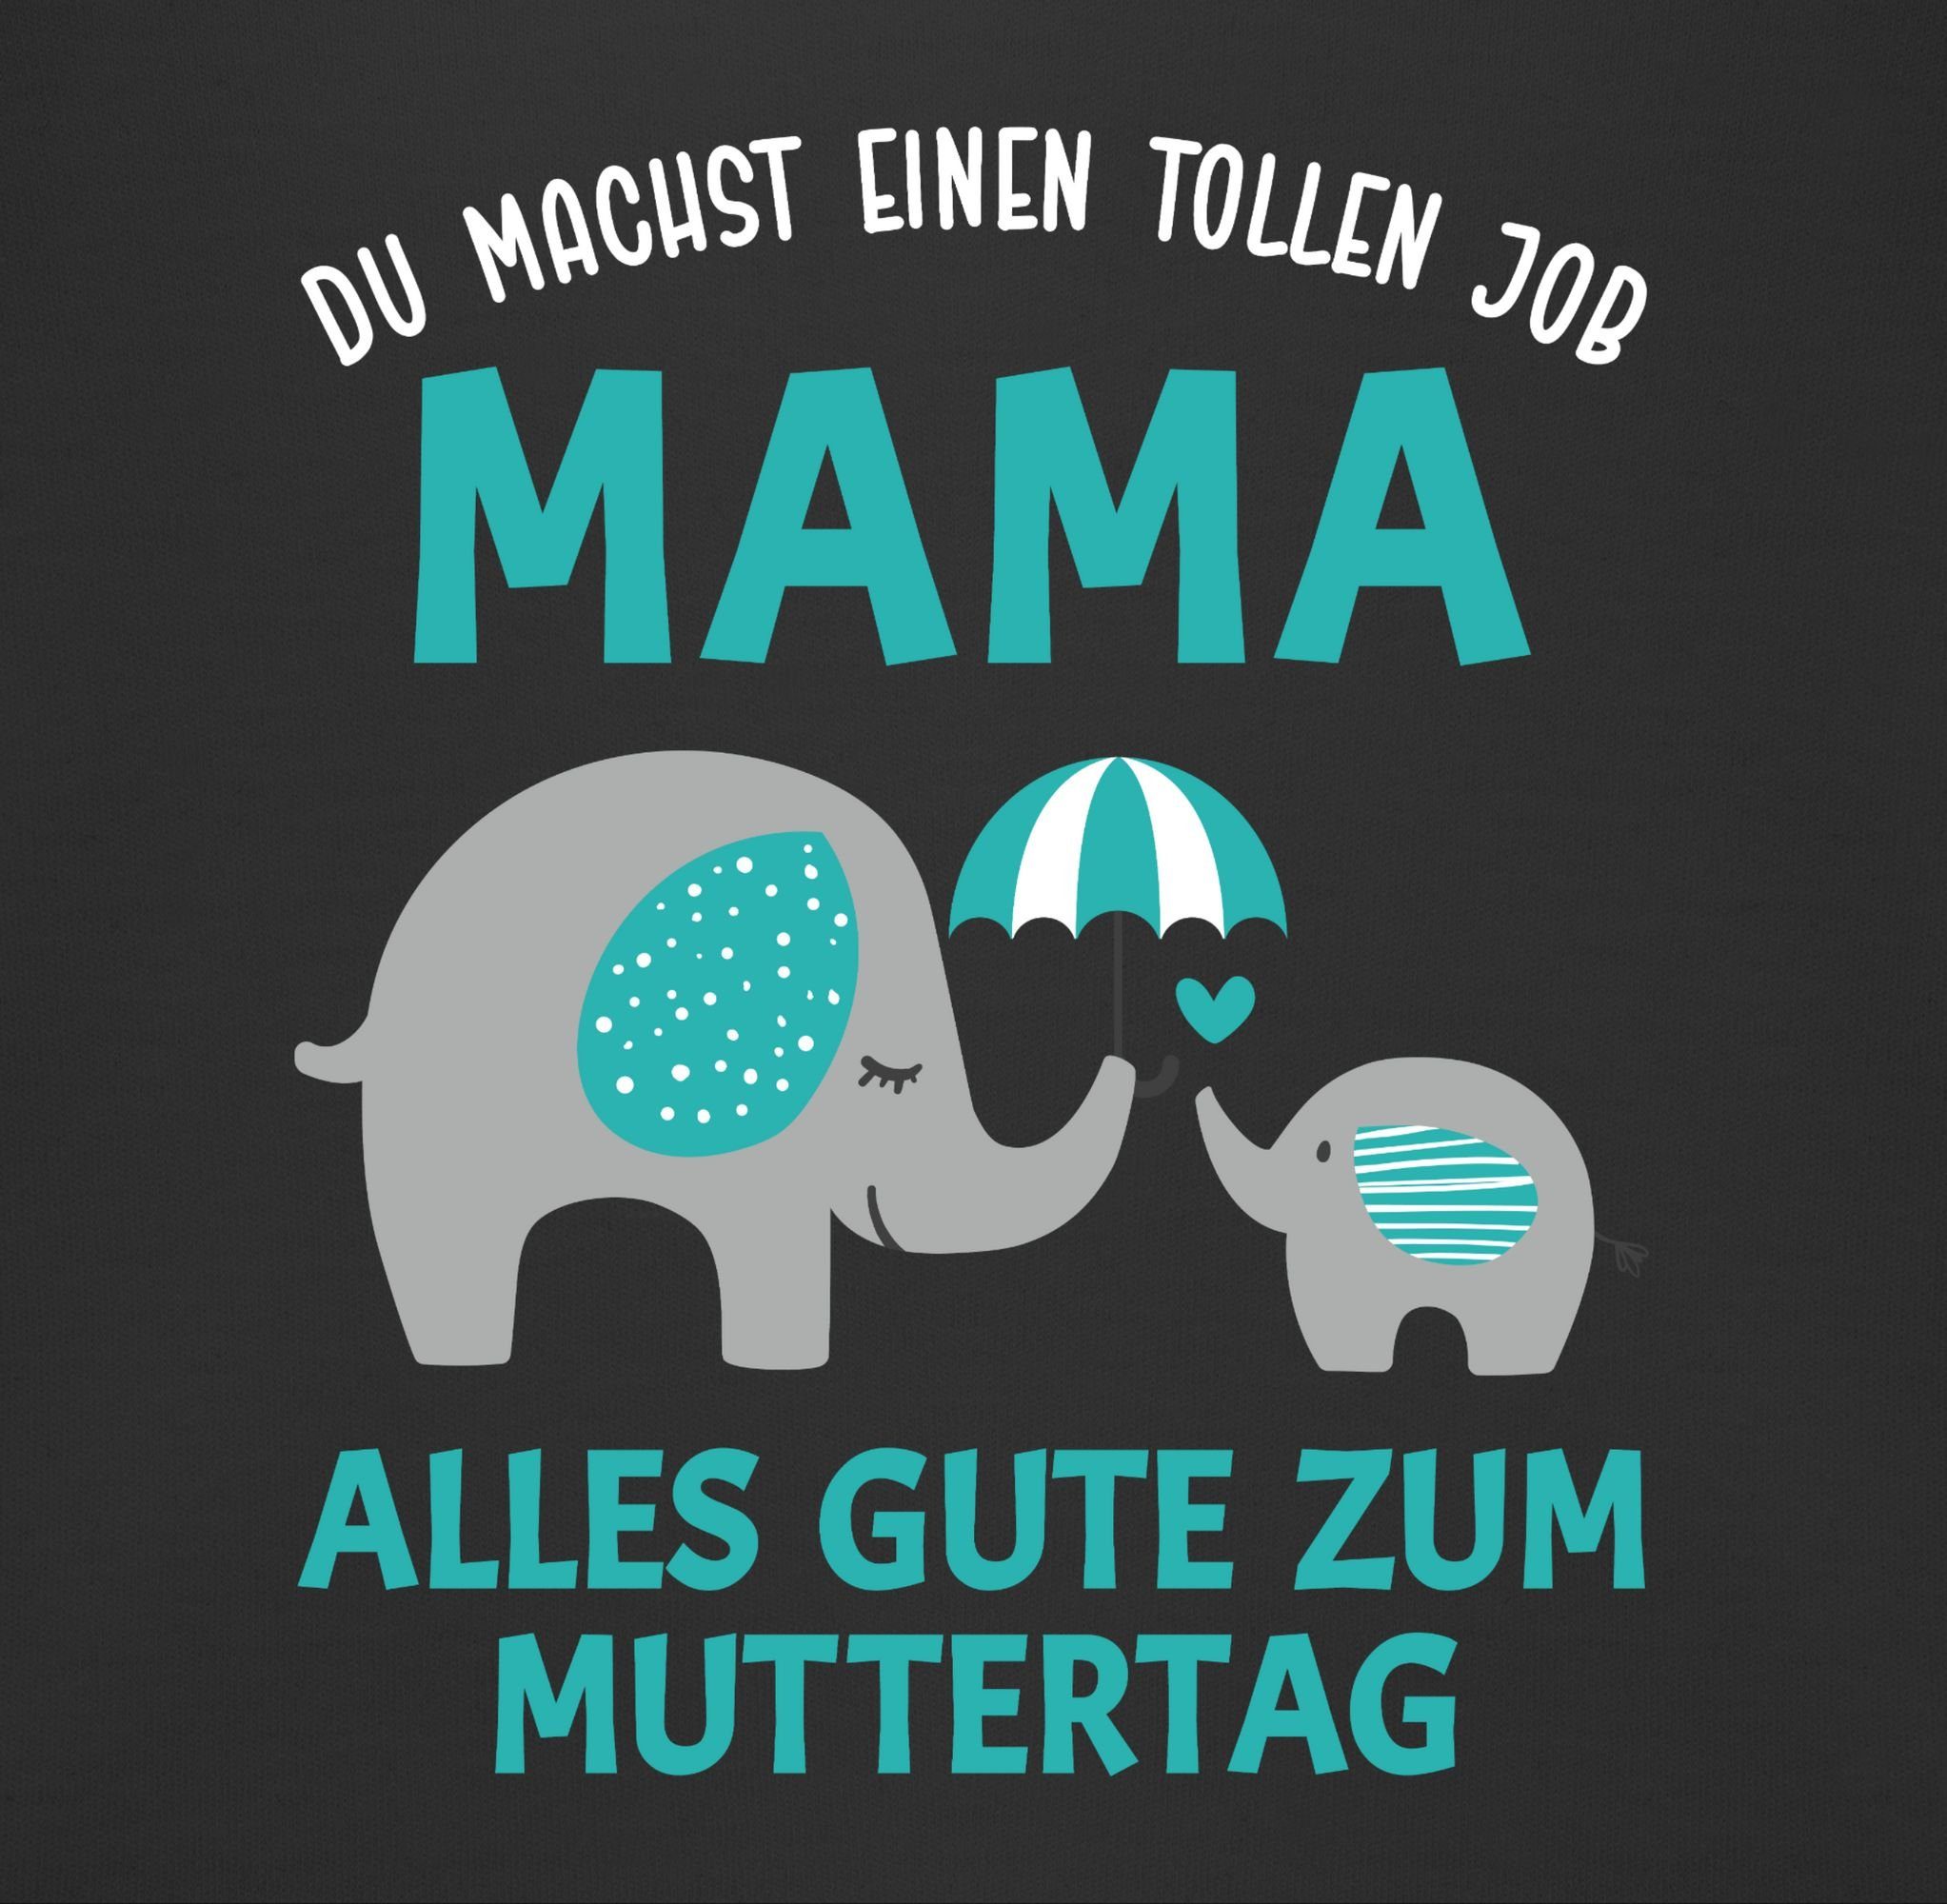 Shirtracer Sweatshirt Du machst einen - 3 Geschenk Job Zum 1 Muttertagsgeschenk Mama tollen Schwarz Muttertag